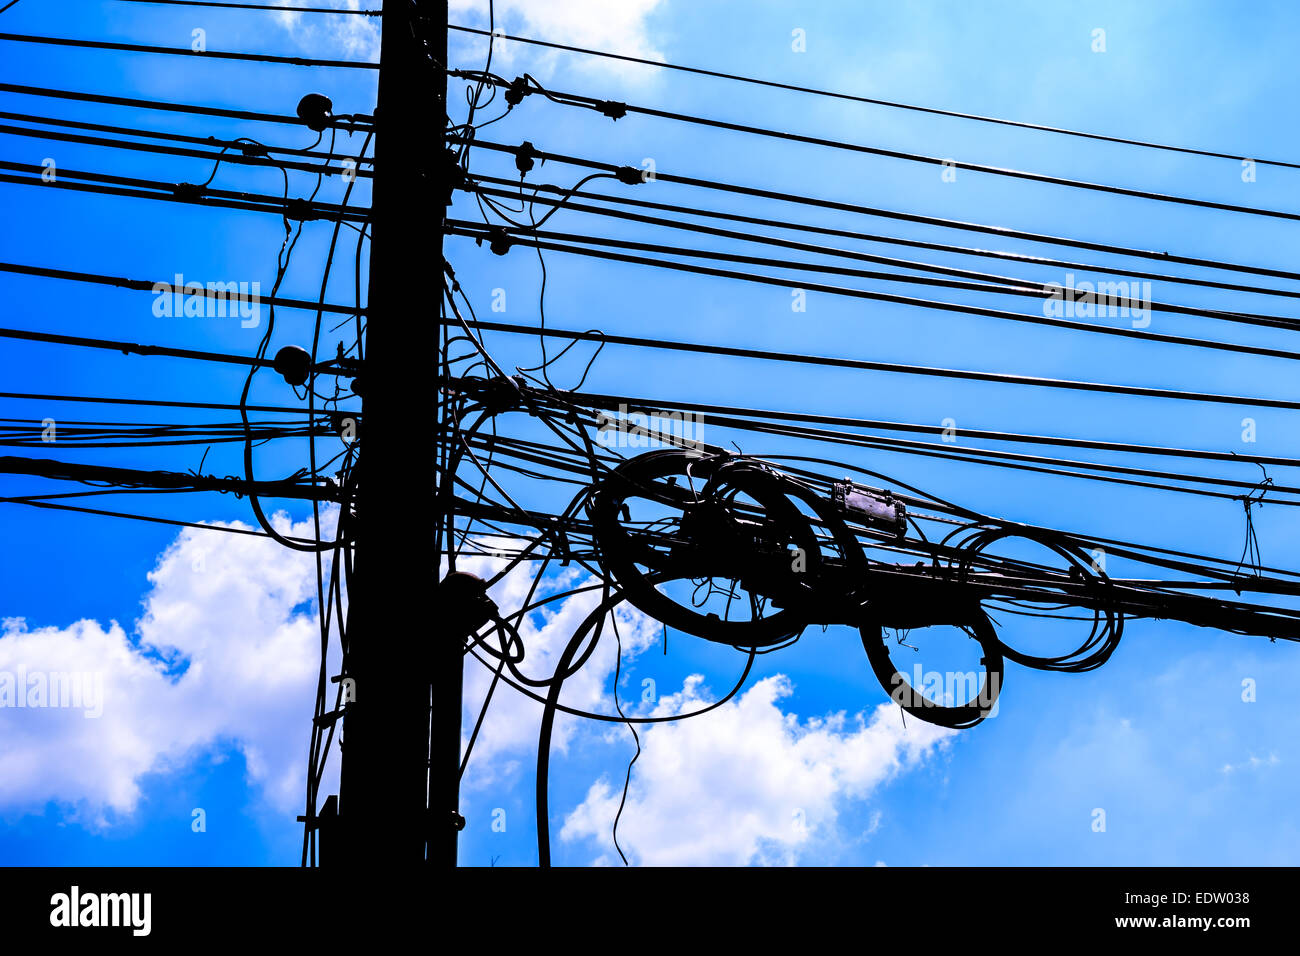 Poste de electricidad con cables desordenados y blue sky (silueta) Foto de stock